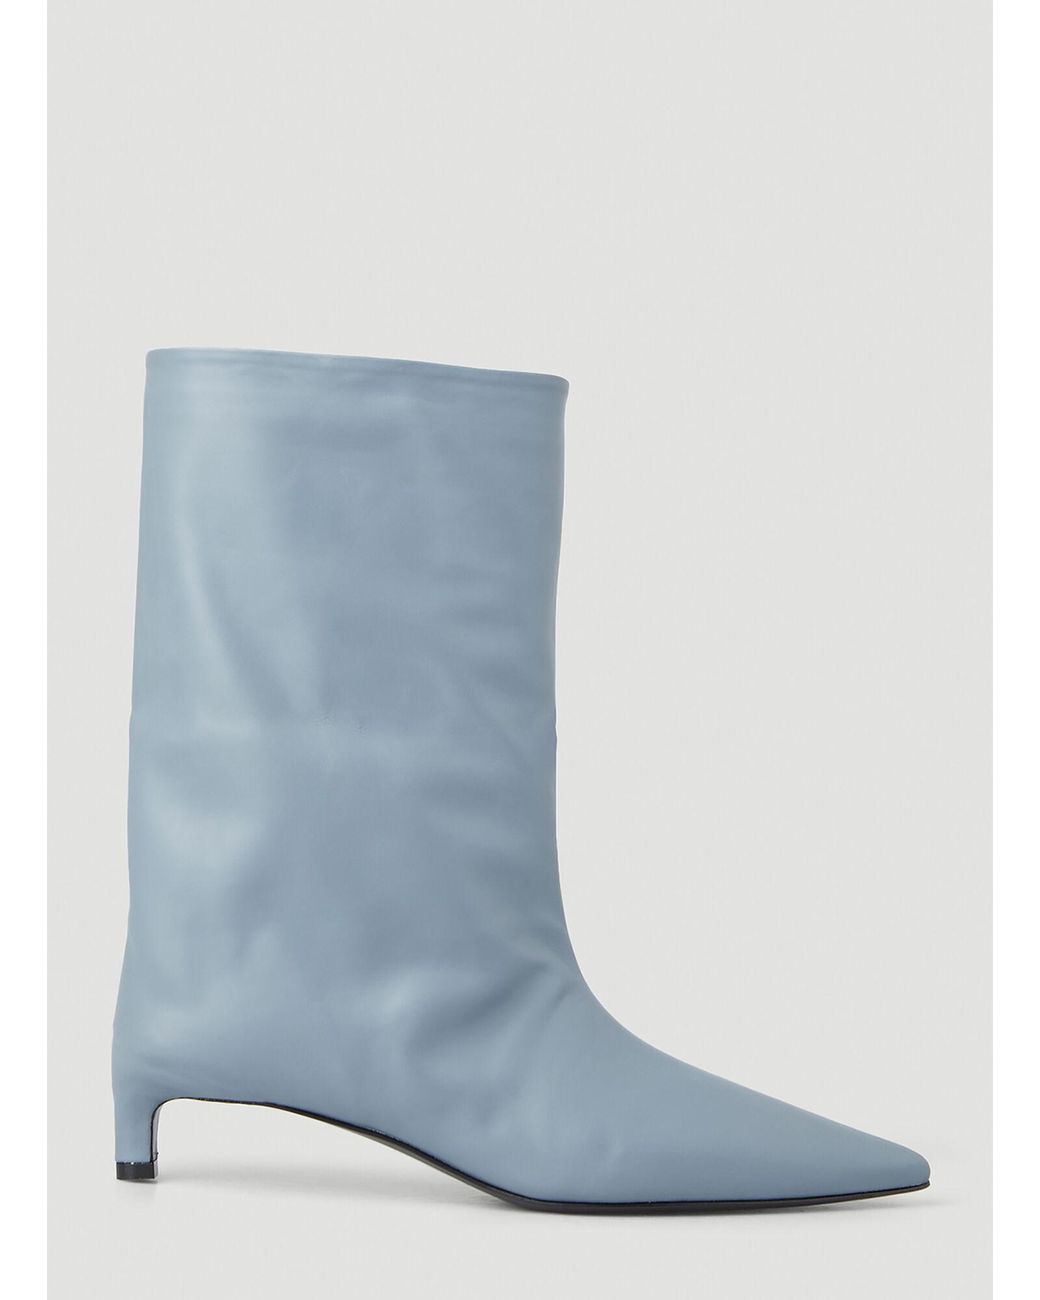 Jil Sander Kitten Heel Ankle Boots in Blue | Lyst